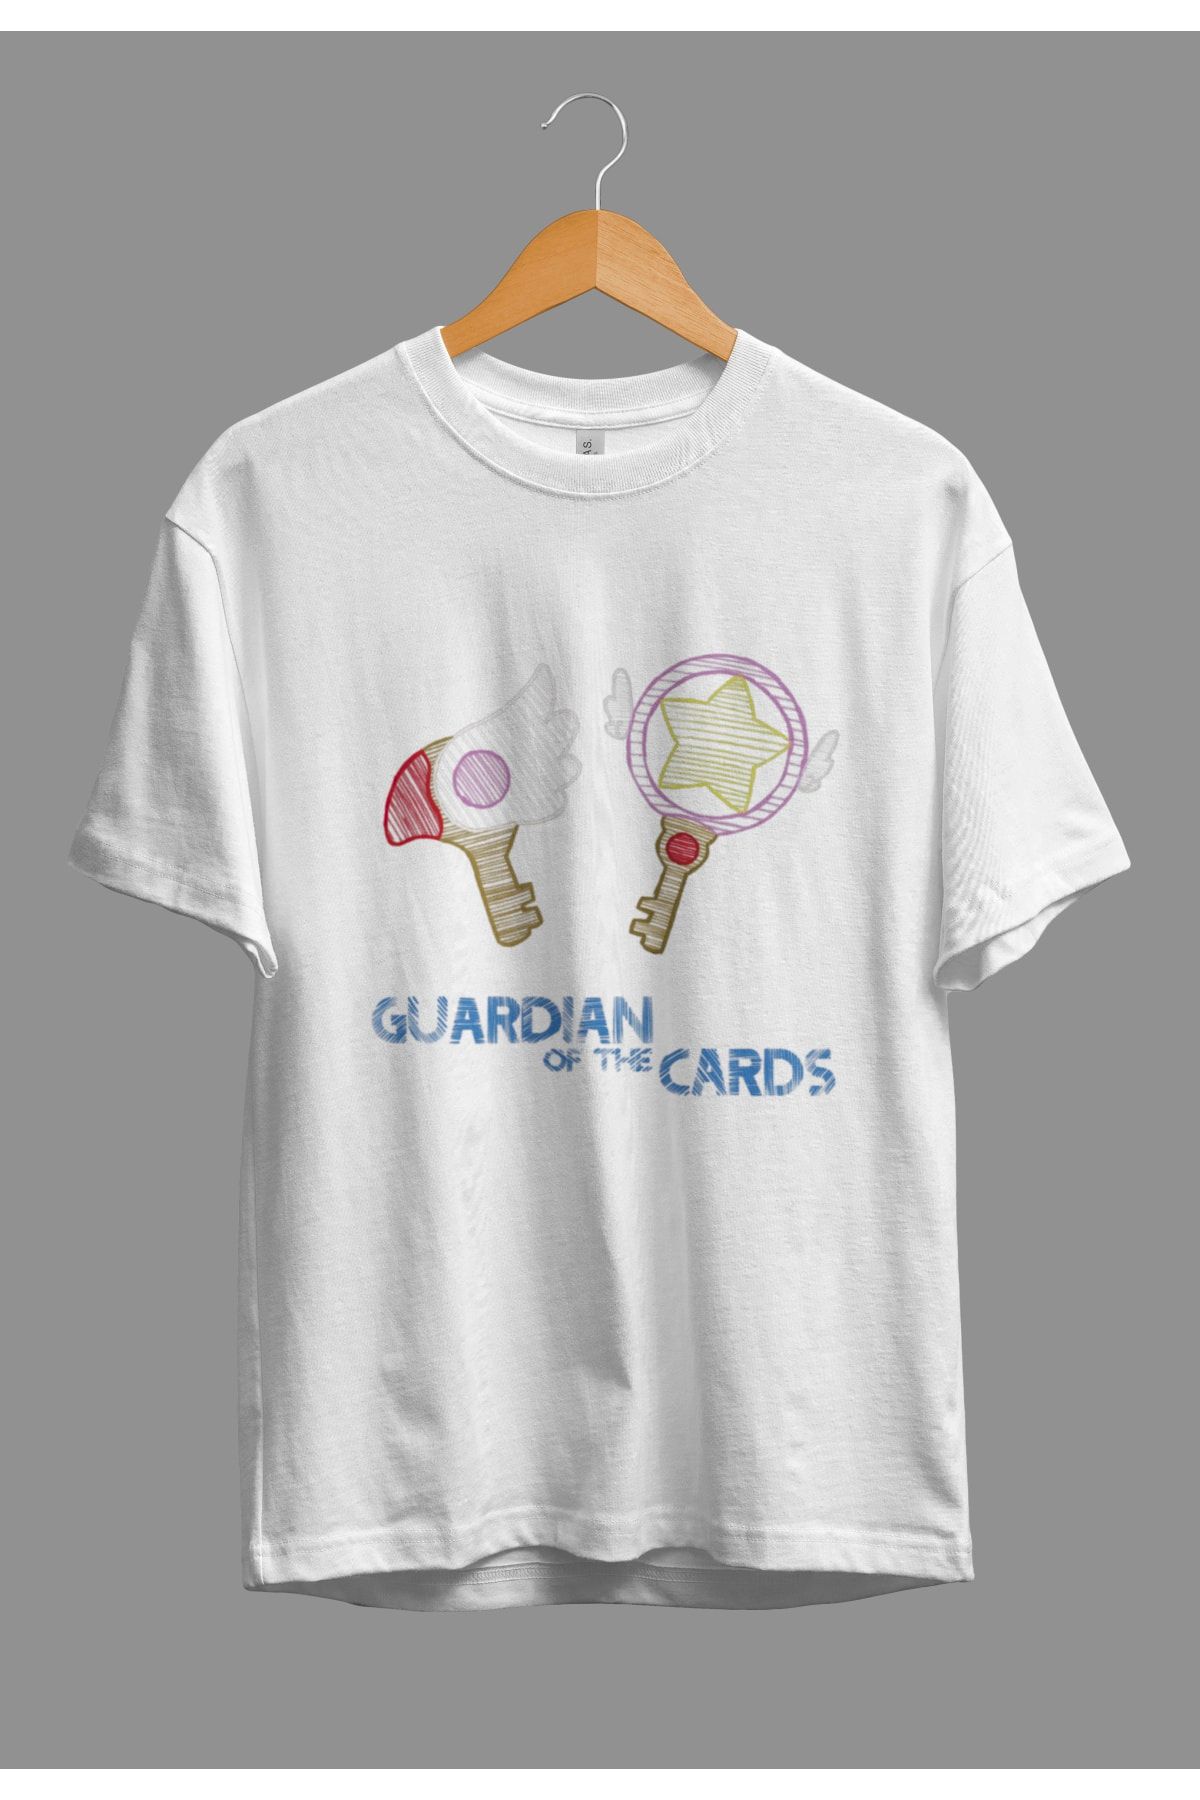 Corvo Oversize Cardcaptor Sakura Sihirli Eşyalar Anime Karakter Baskılı Özel Tasarım Tişört